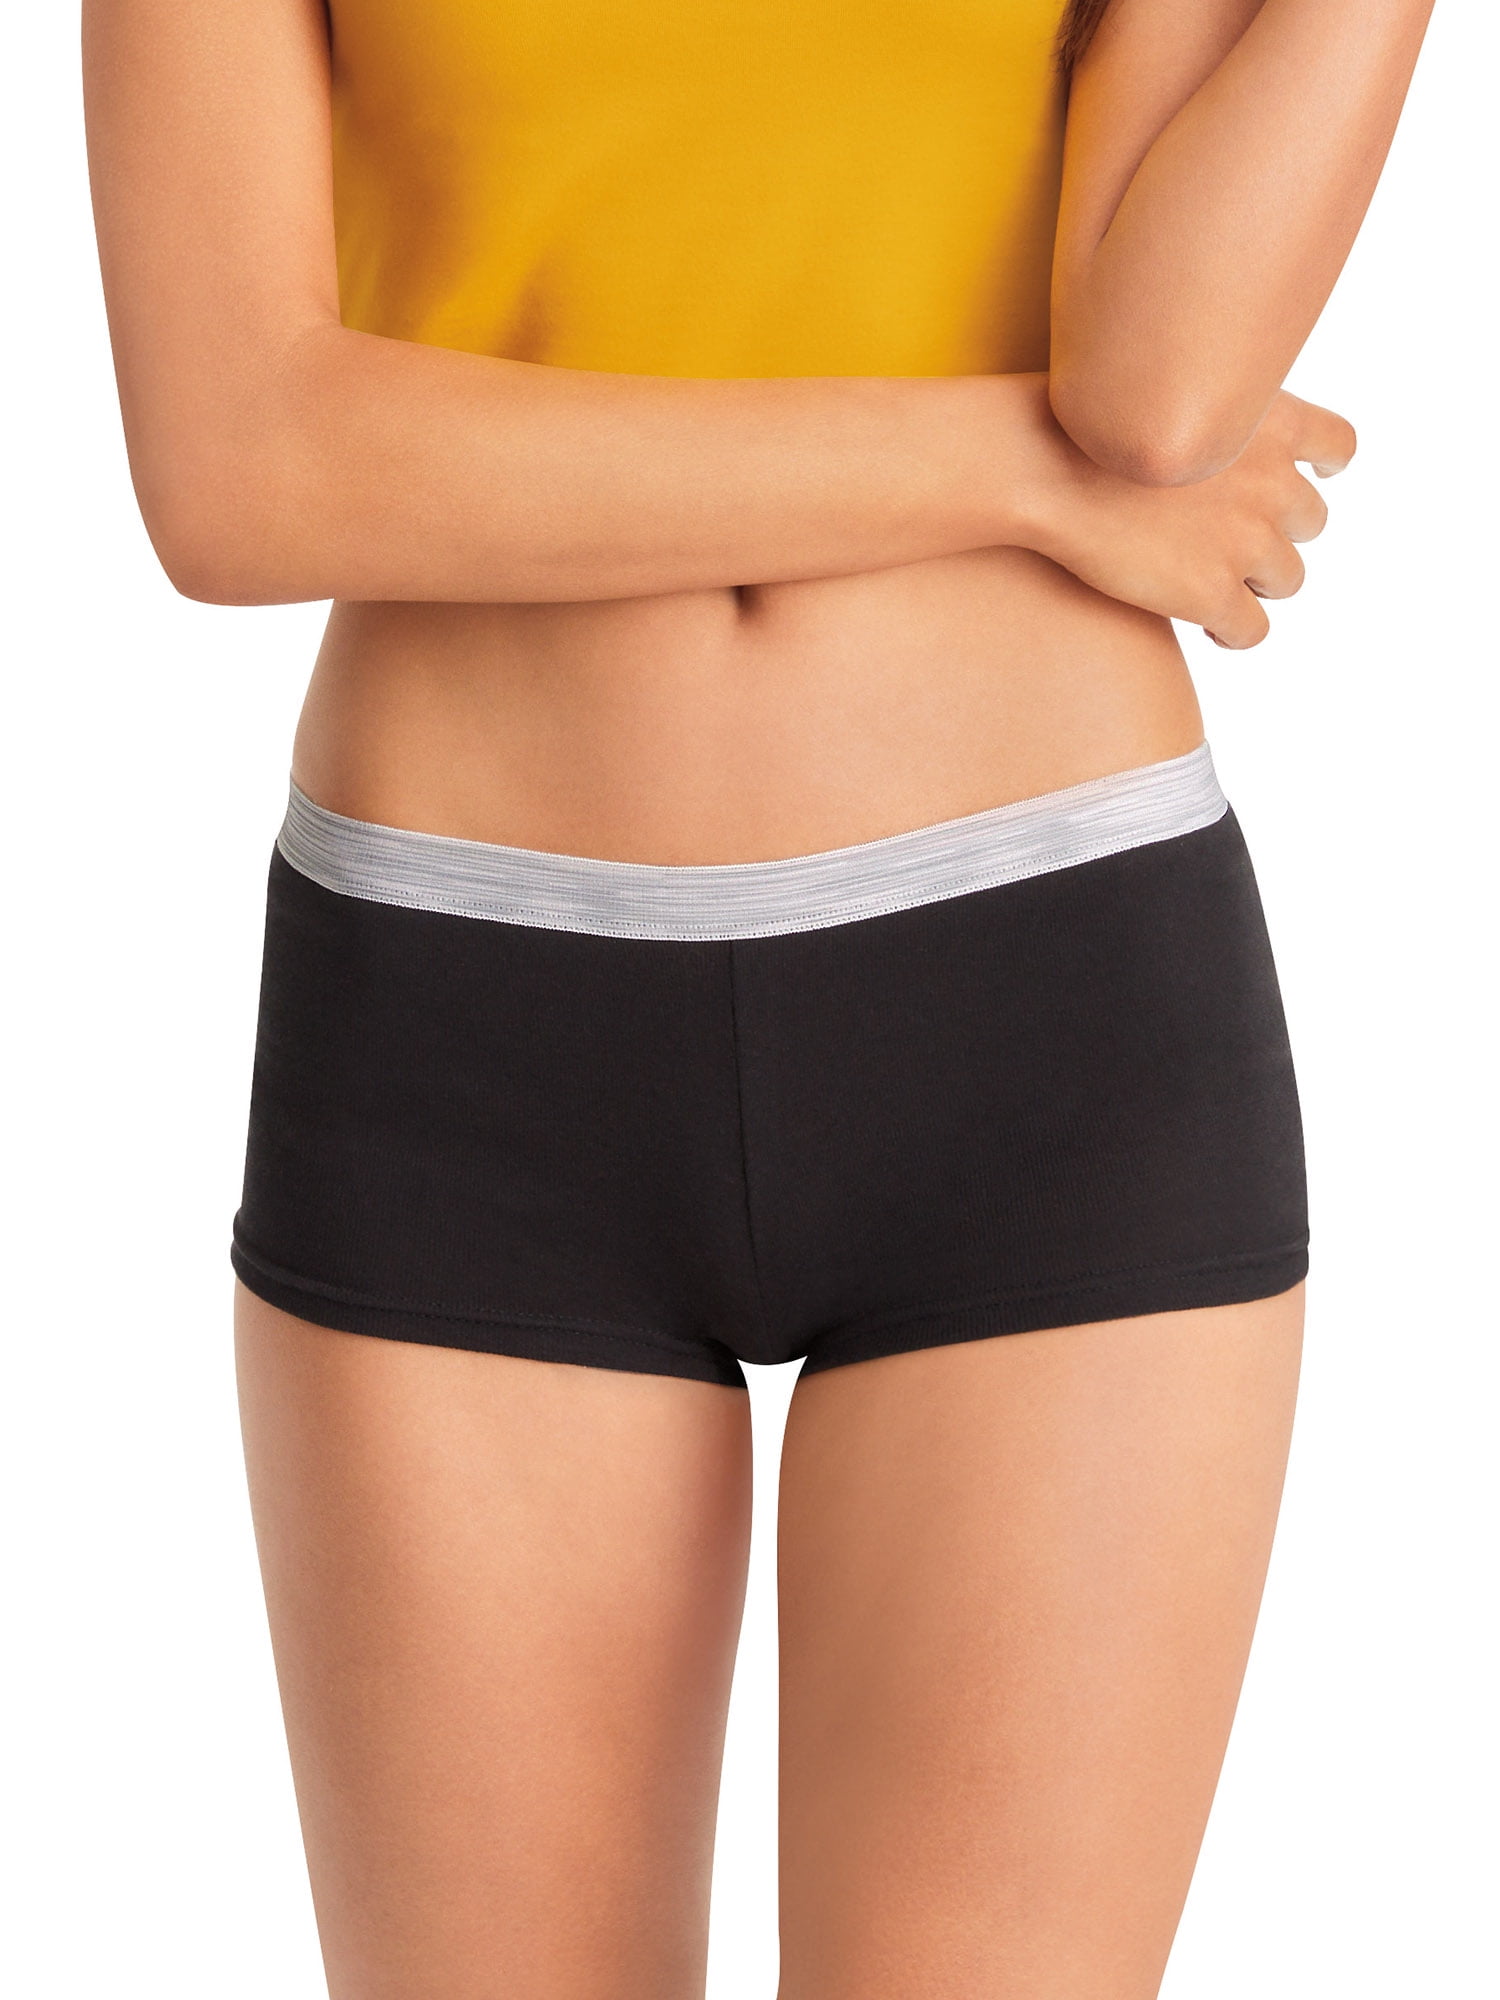 Hanes Women's Super Value Sporty Cotton Boyshort Underwear, 12-Pack 